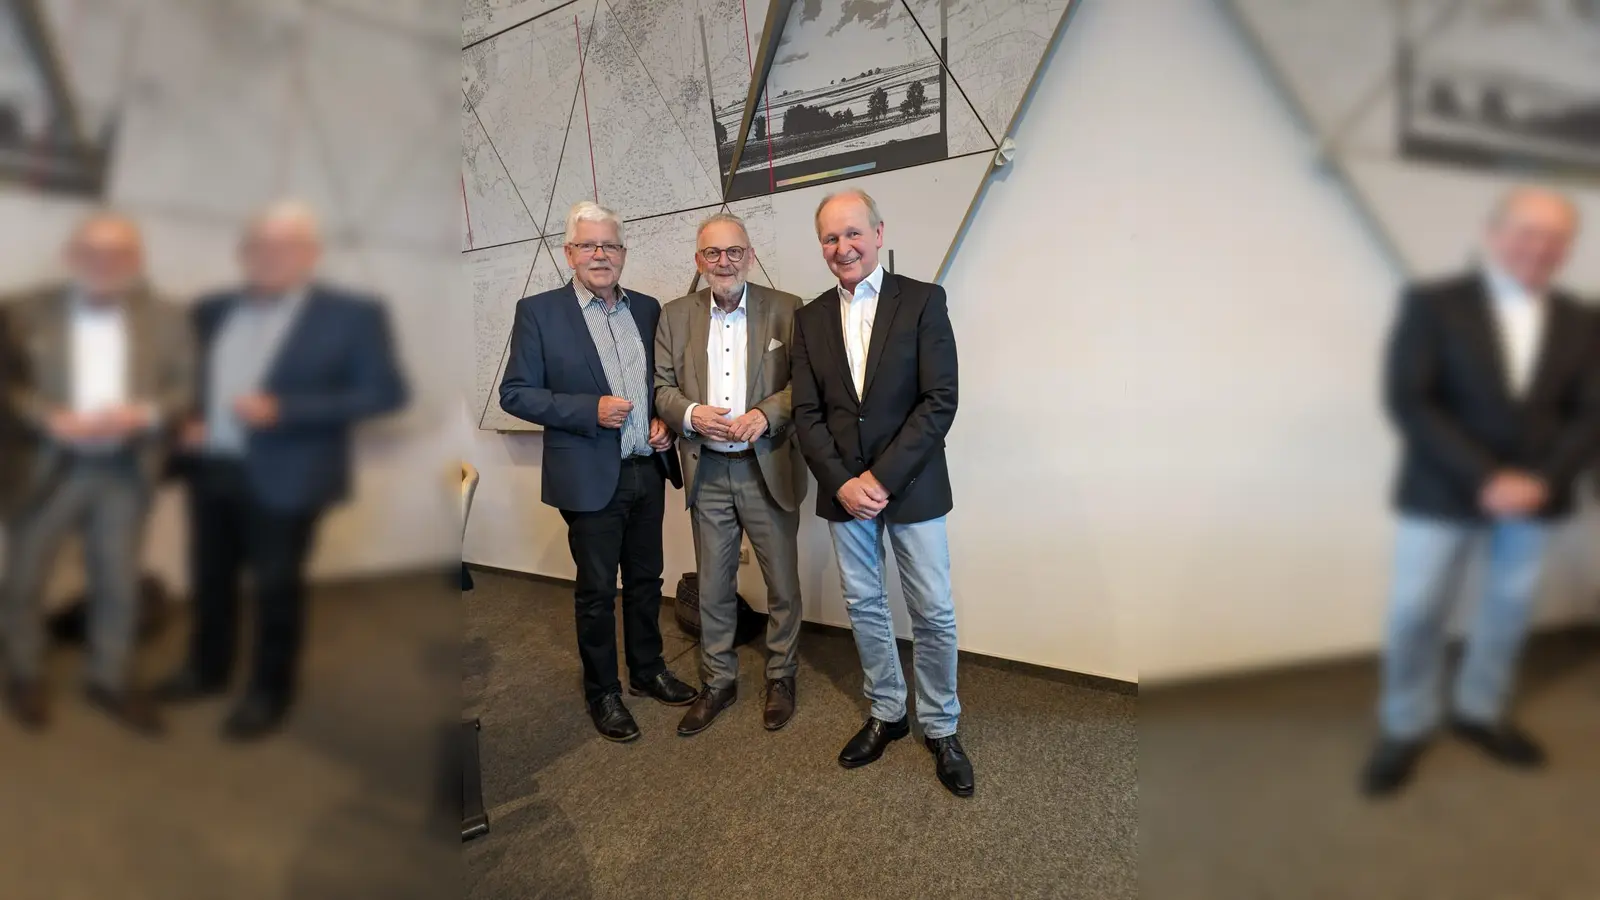 Seit jeweils vier Jahrzehnten Mitglied im Aichacher Stadtrat (von links): Helmut Beck (CSU), Bürgermeister Klaus Habermann (SPD) und Georg Robert Jung (FWG). (Foto: privat)